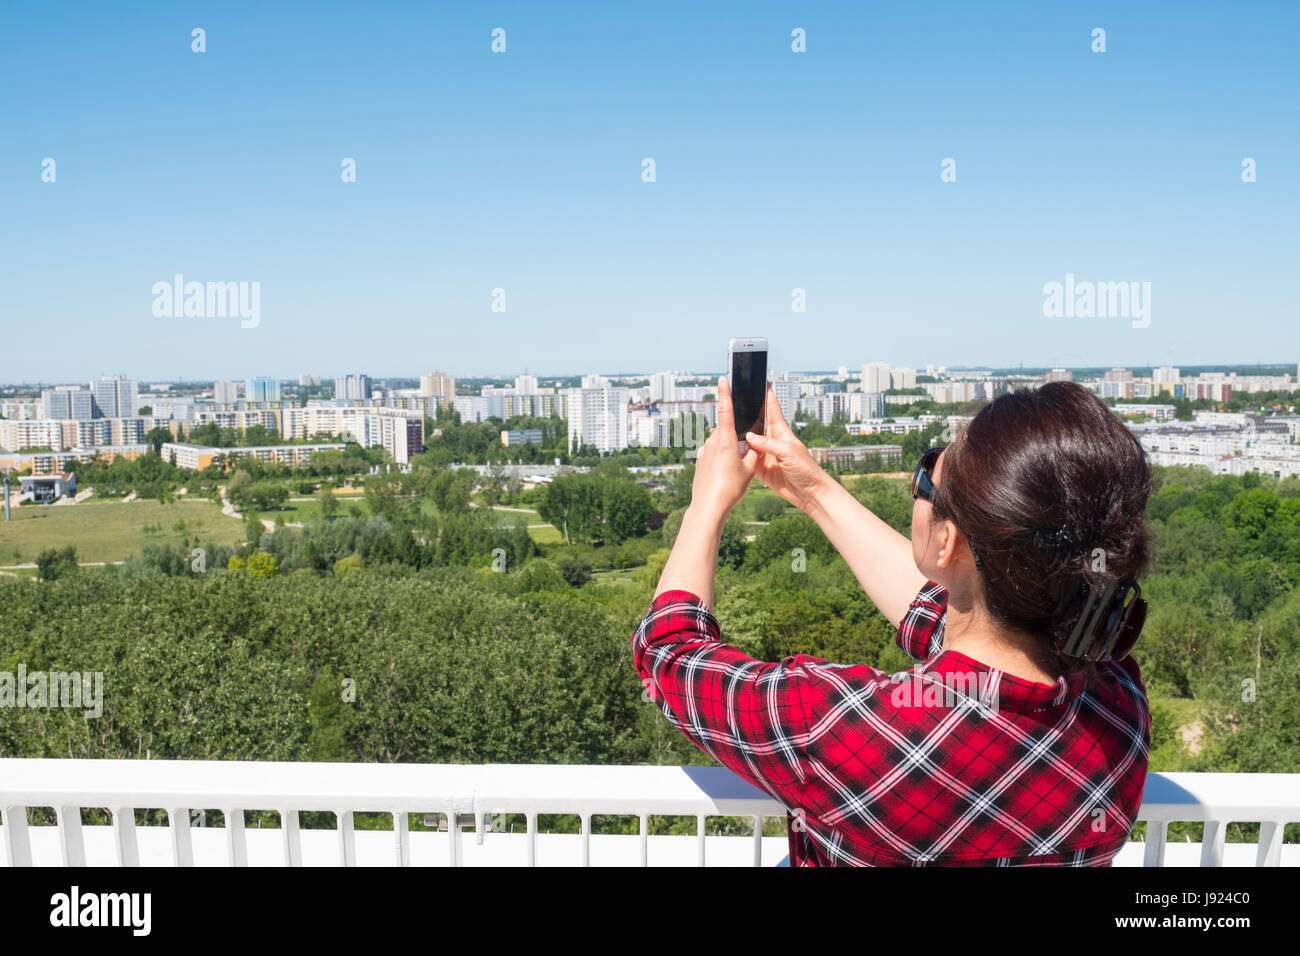 Besucher auf die Aussichtsplattform am IGA 2017 internationales Gartenfestival (internationale Garten Ausstellung) in Berlin, Deutschland Stockfoto